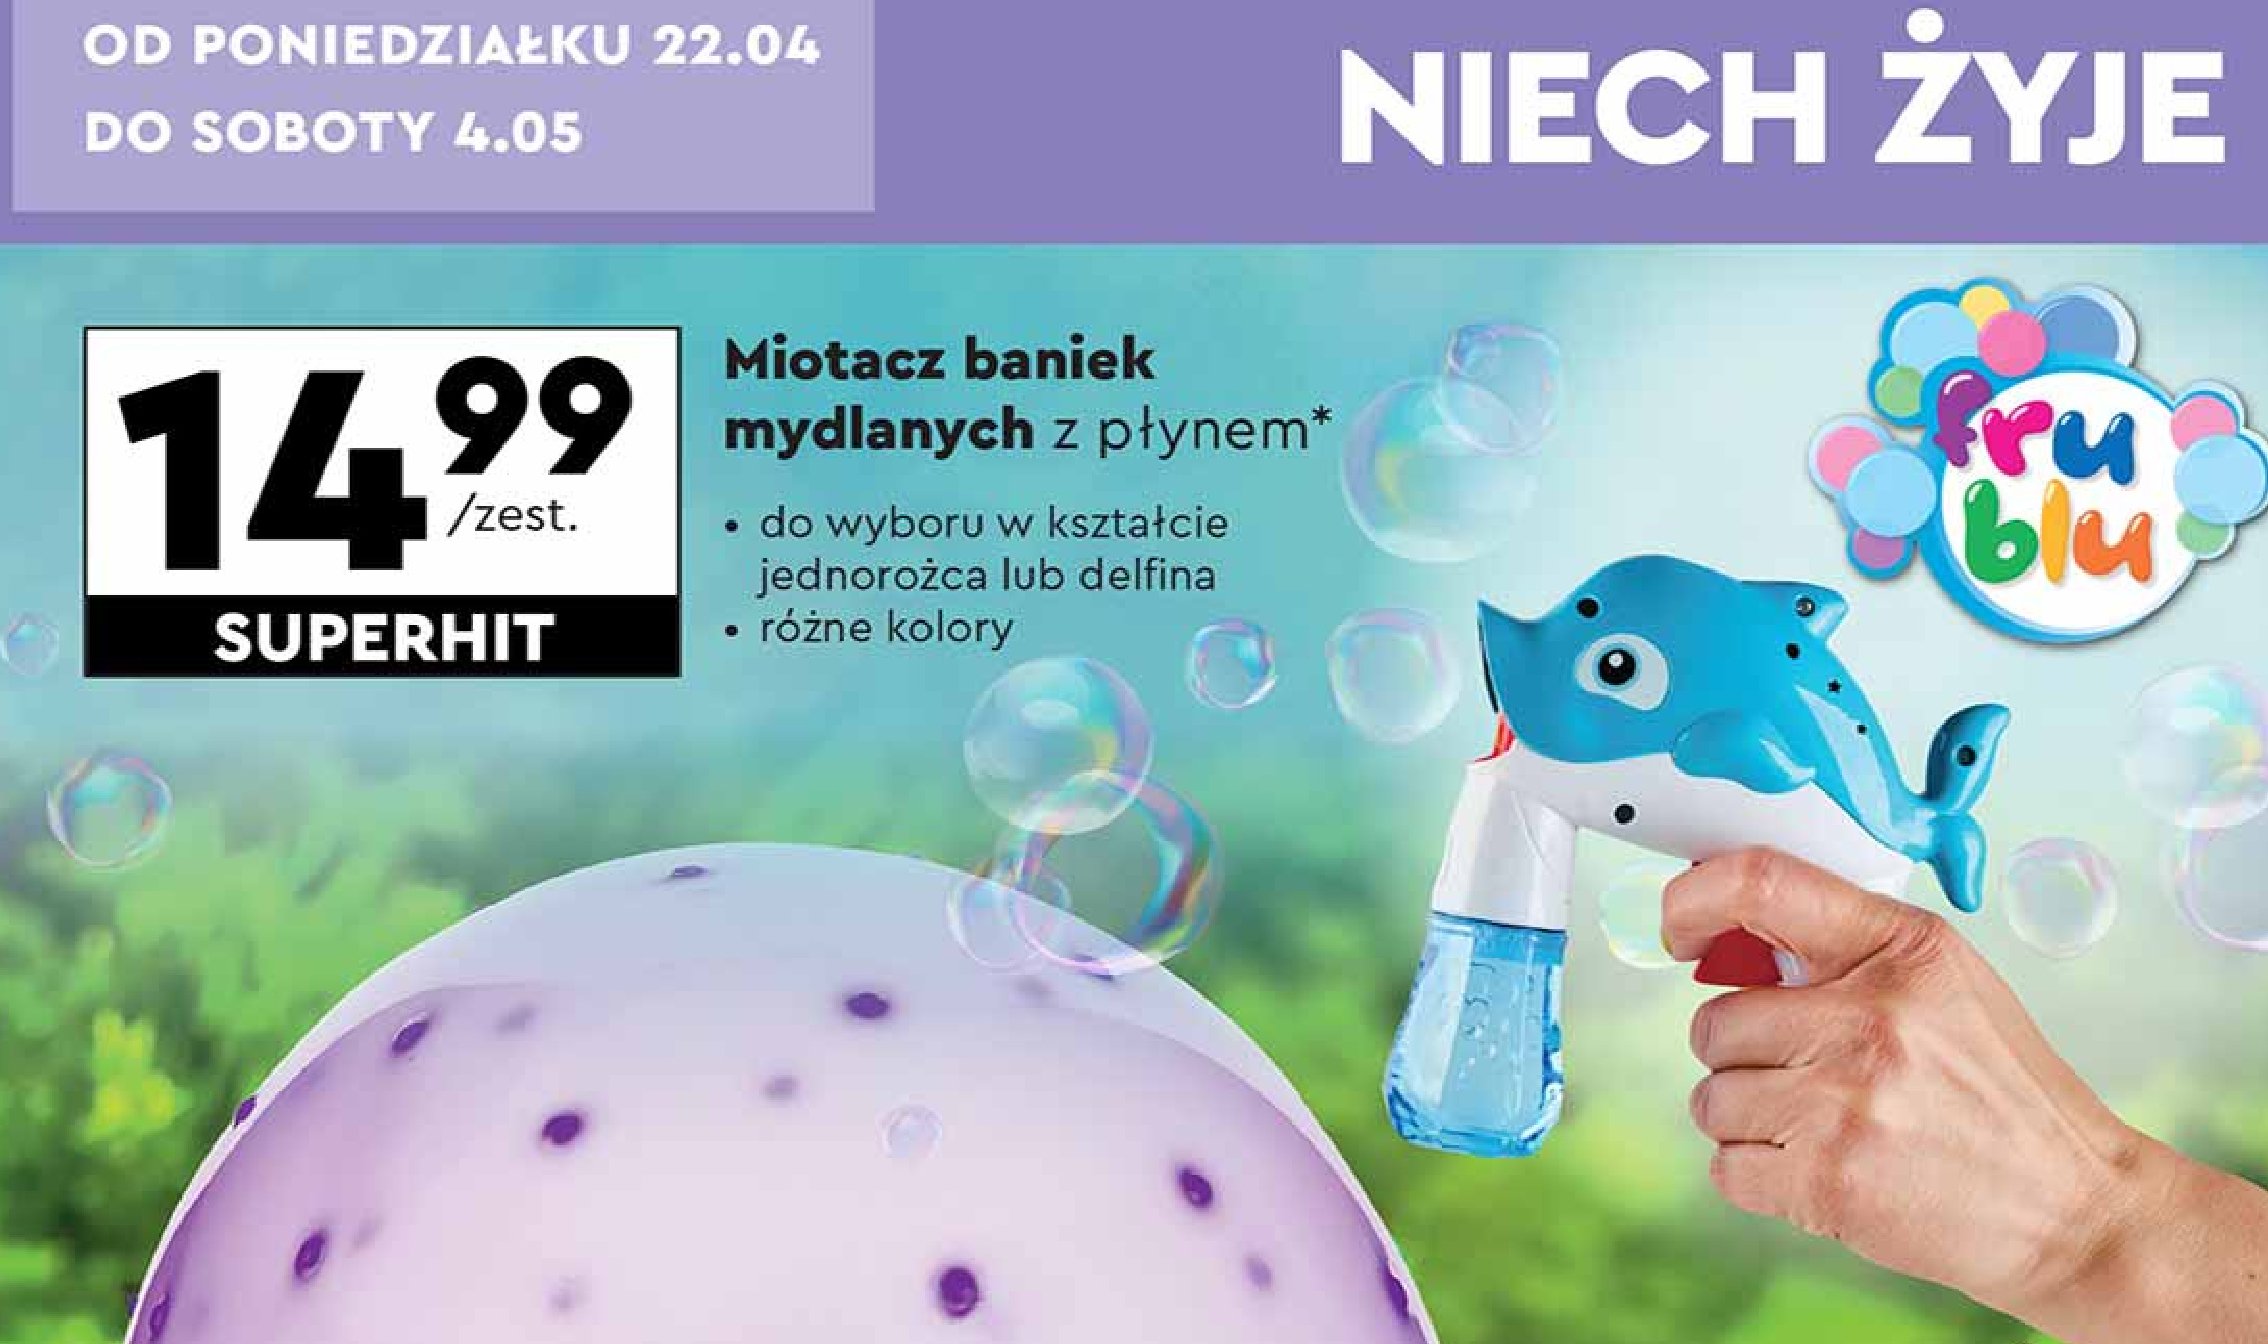 Miotacz baniek mydlanych z płynem - delfin Fru blu promocja w Biedronka